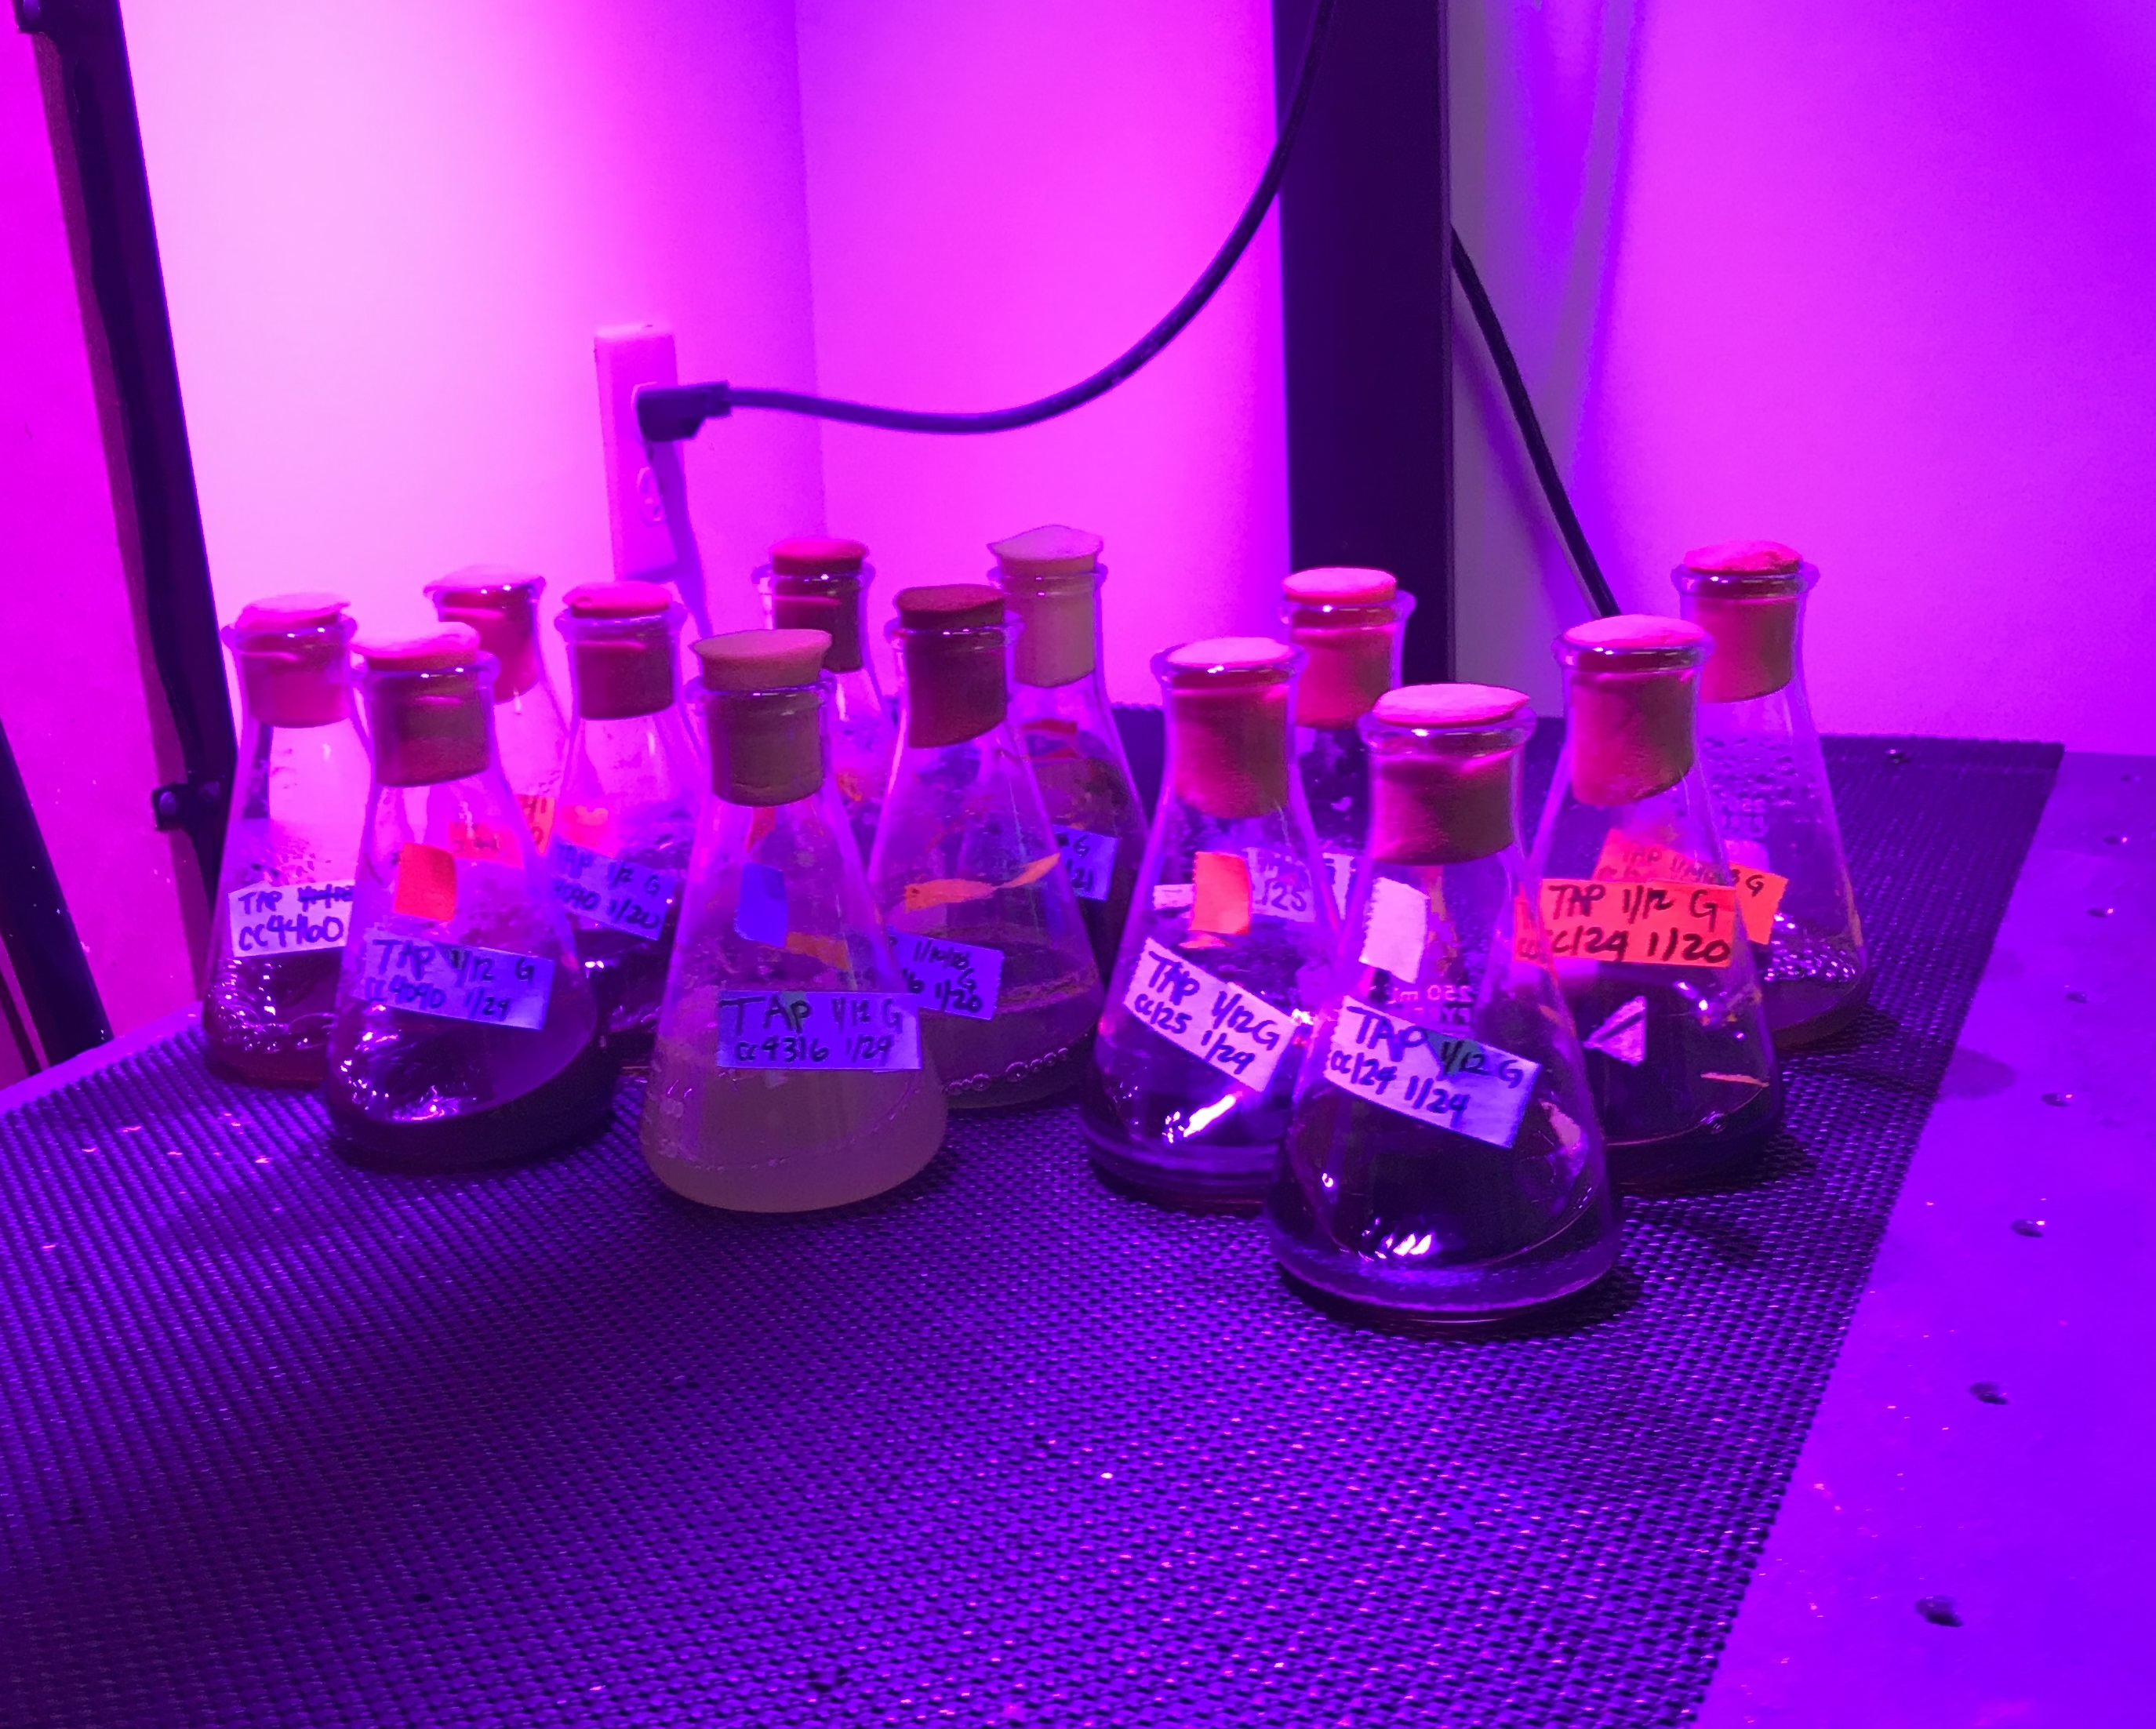 Algae samples in LSU biologist Naohiro Kato's lab.